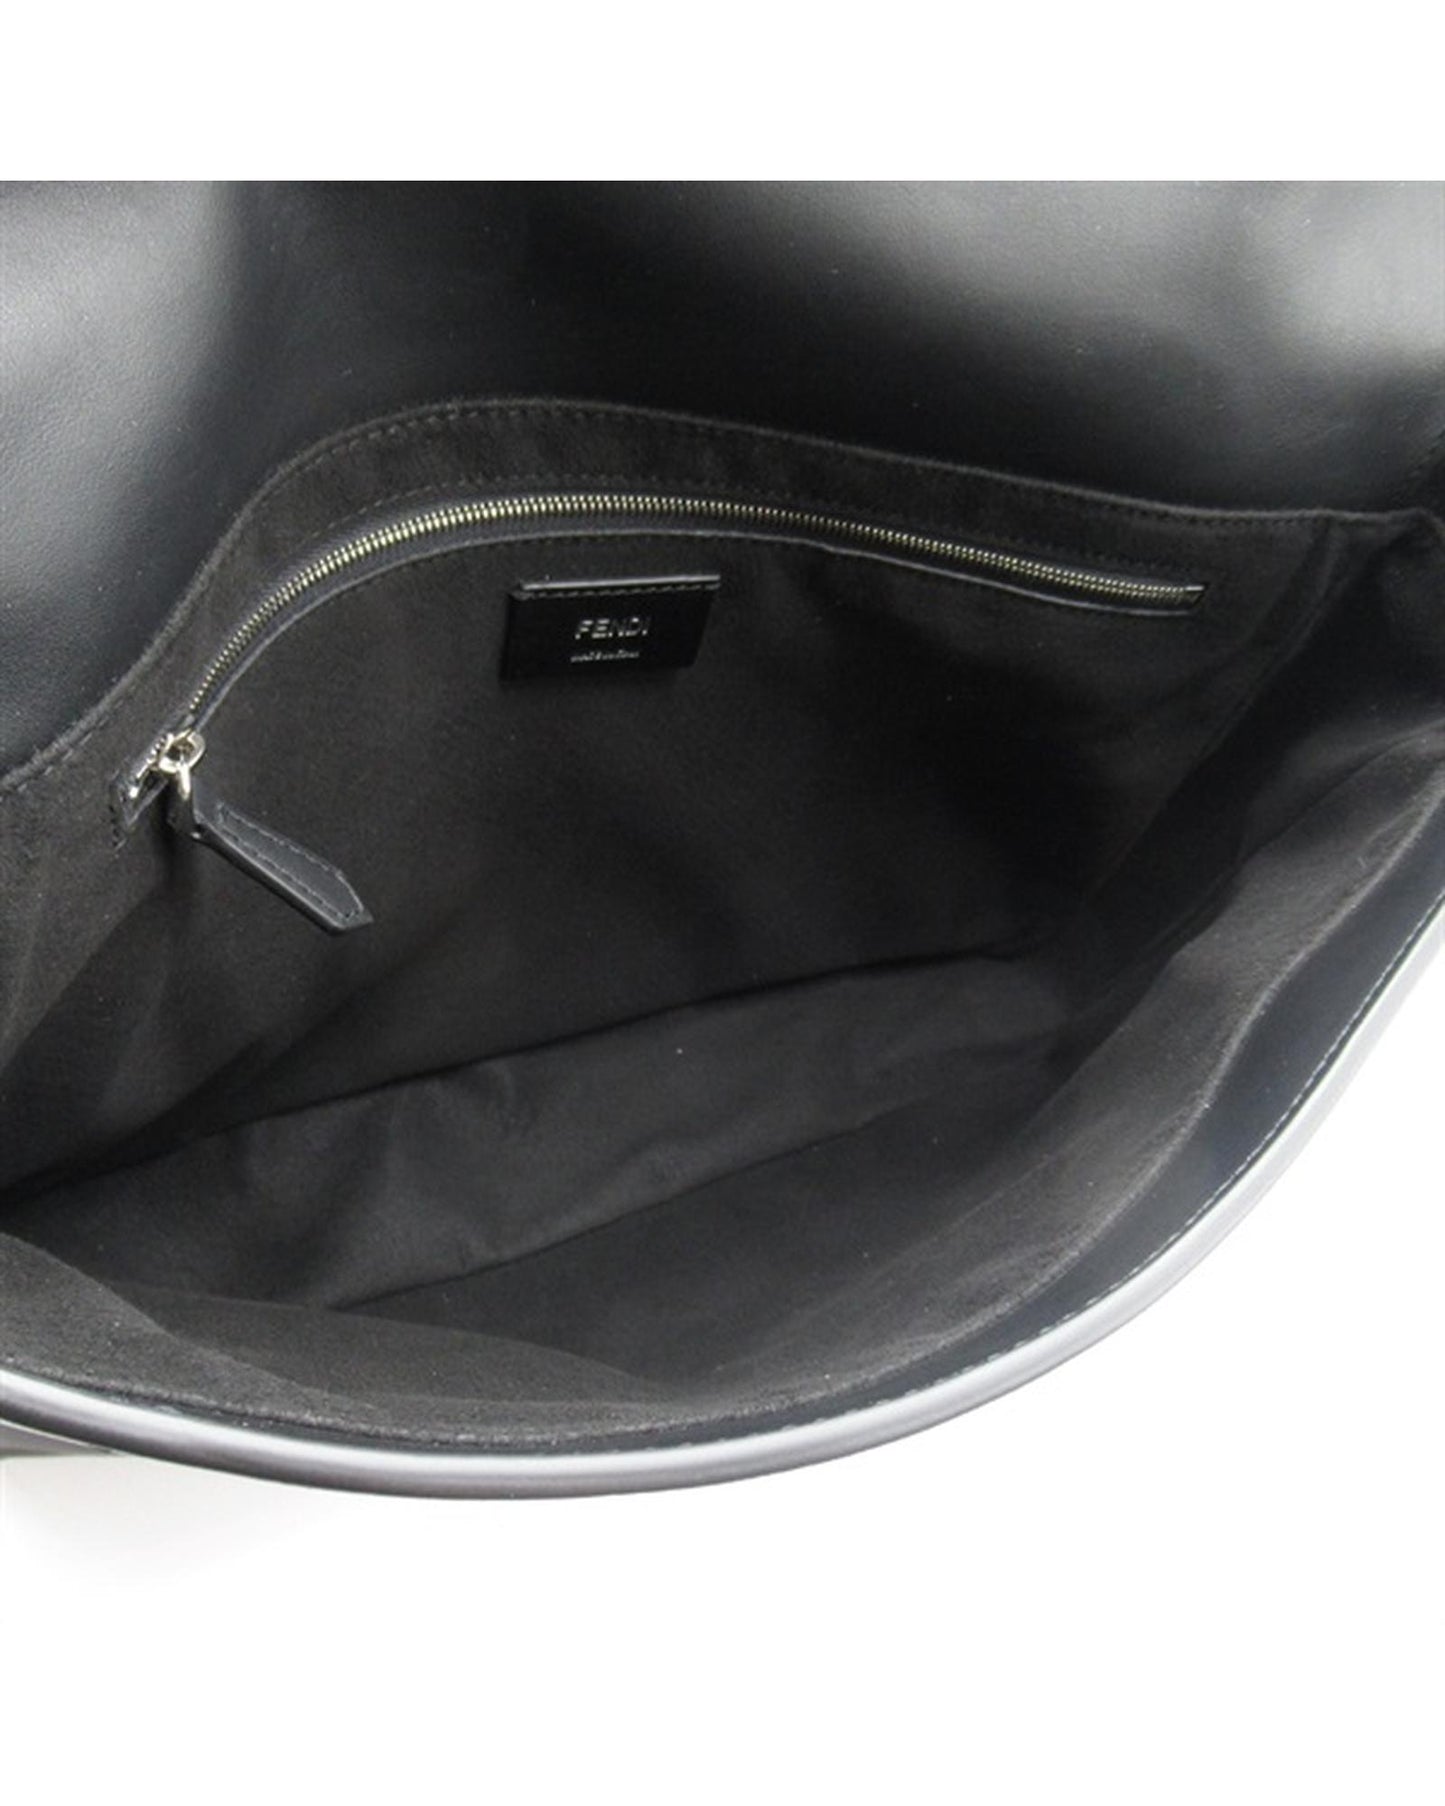 Fendi Women's Black Logo Messenger Bag by Fendi in Black